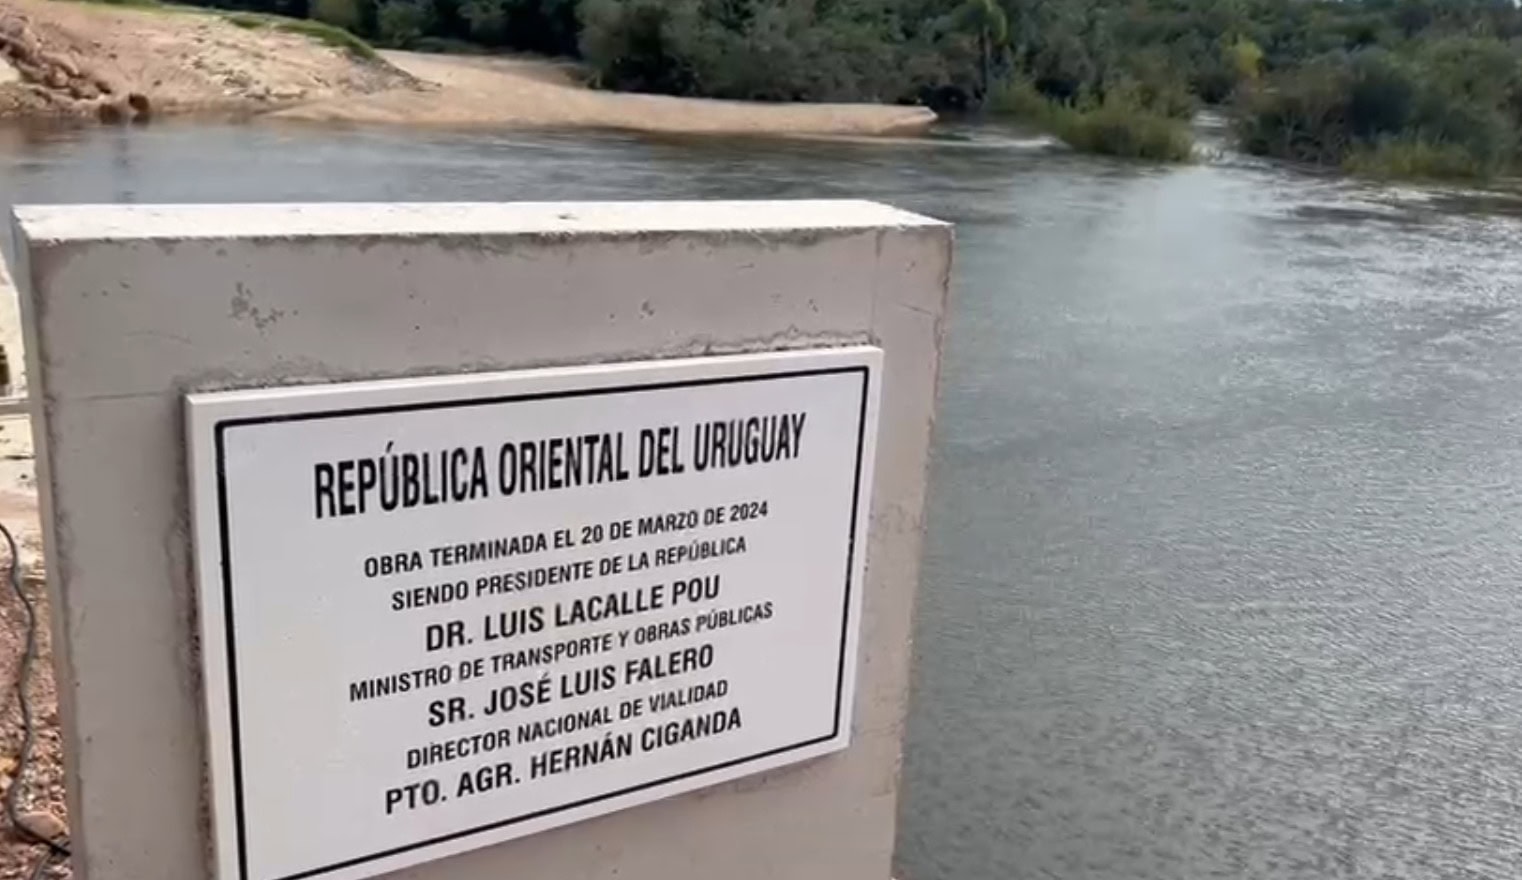 51 millones de pesos fue la inversión realizada en el nuevo puente de “Paso del Gordo” sobre el arroyo “El Cordobes”.